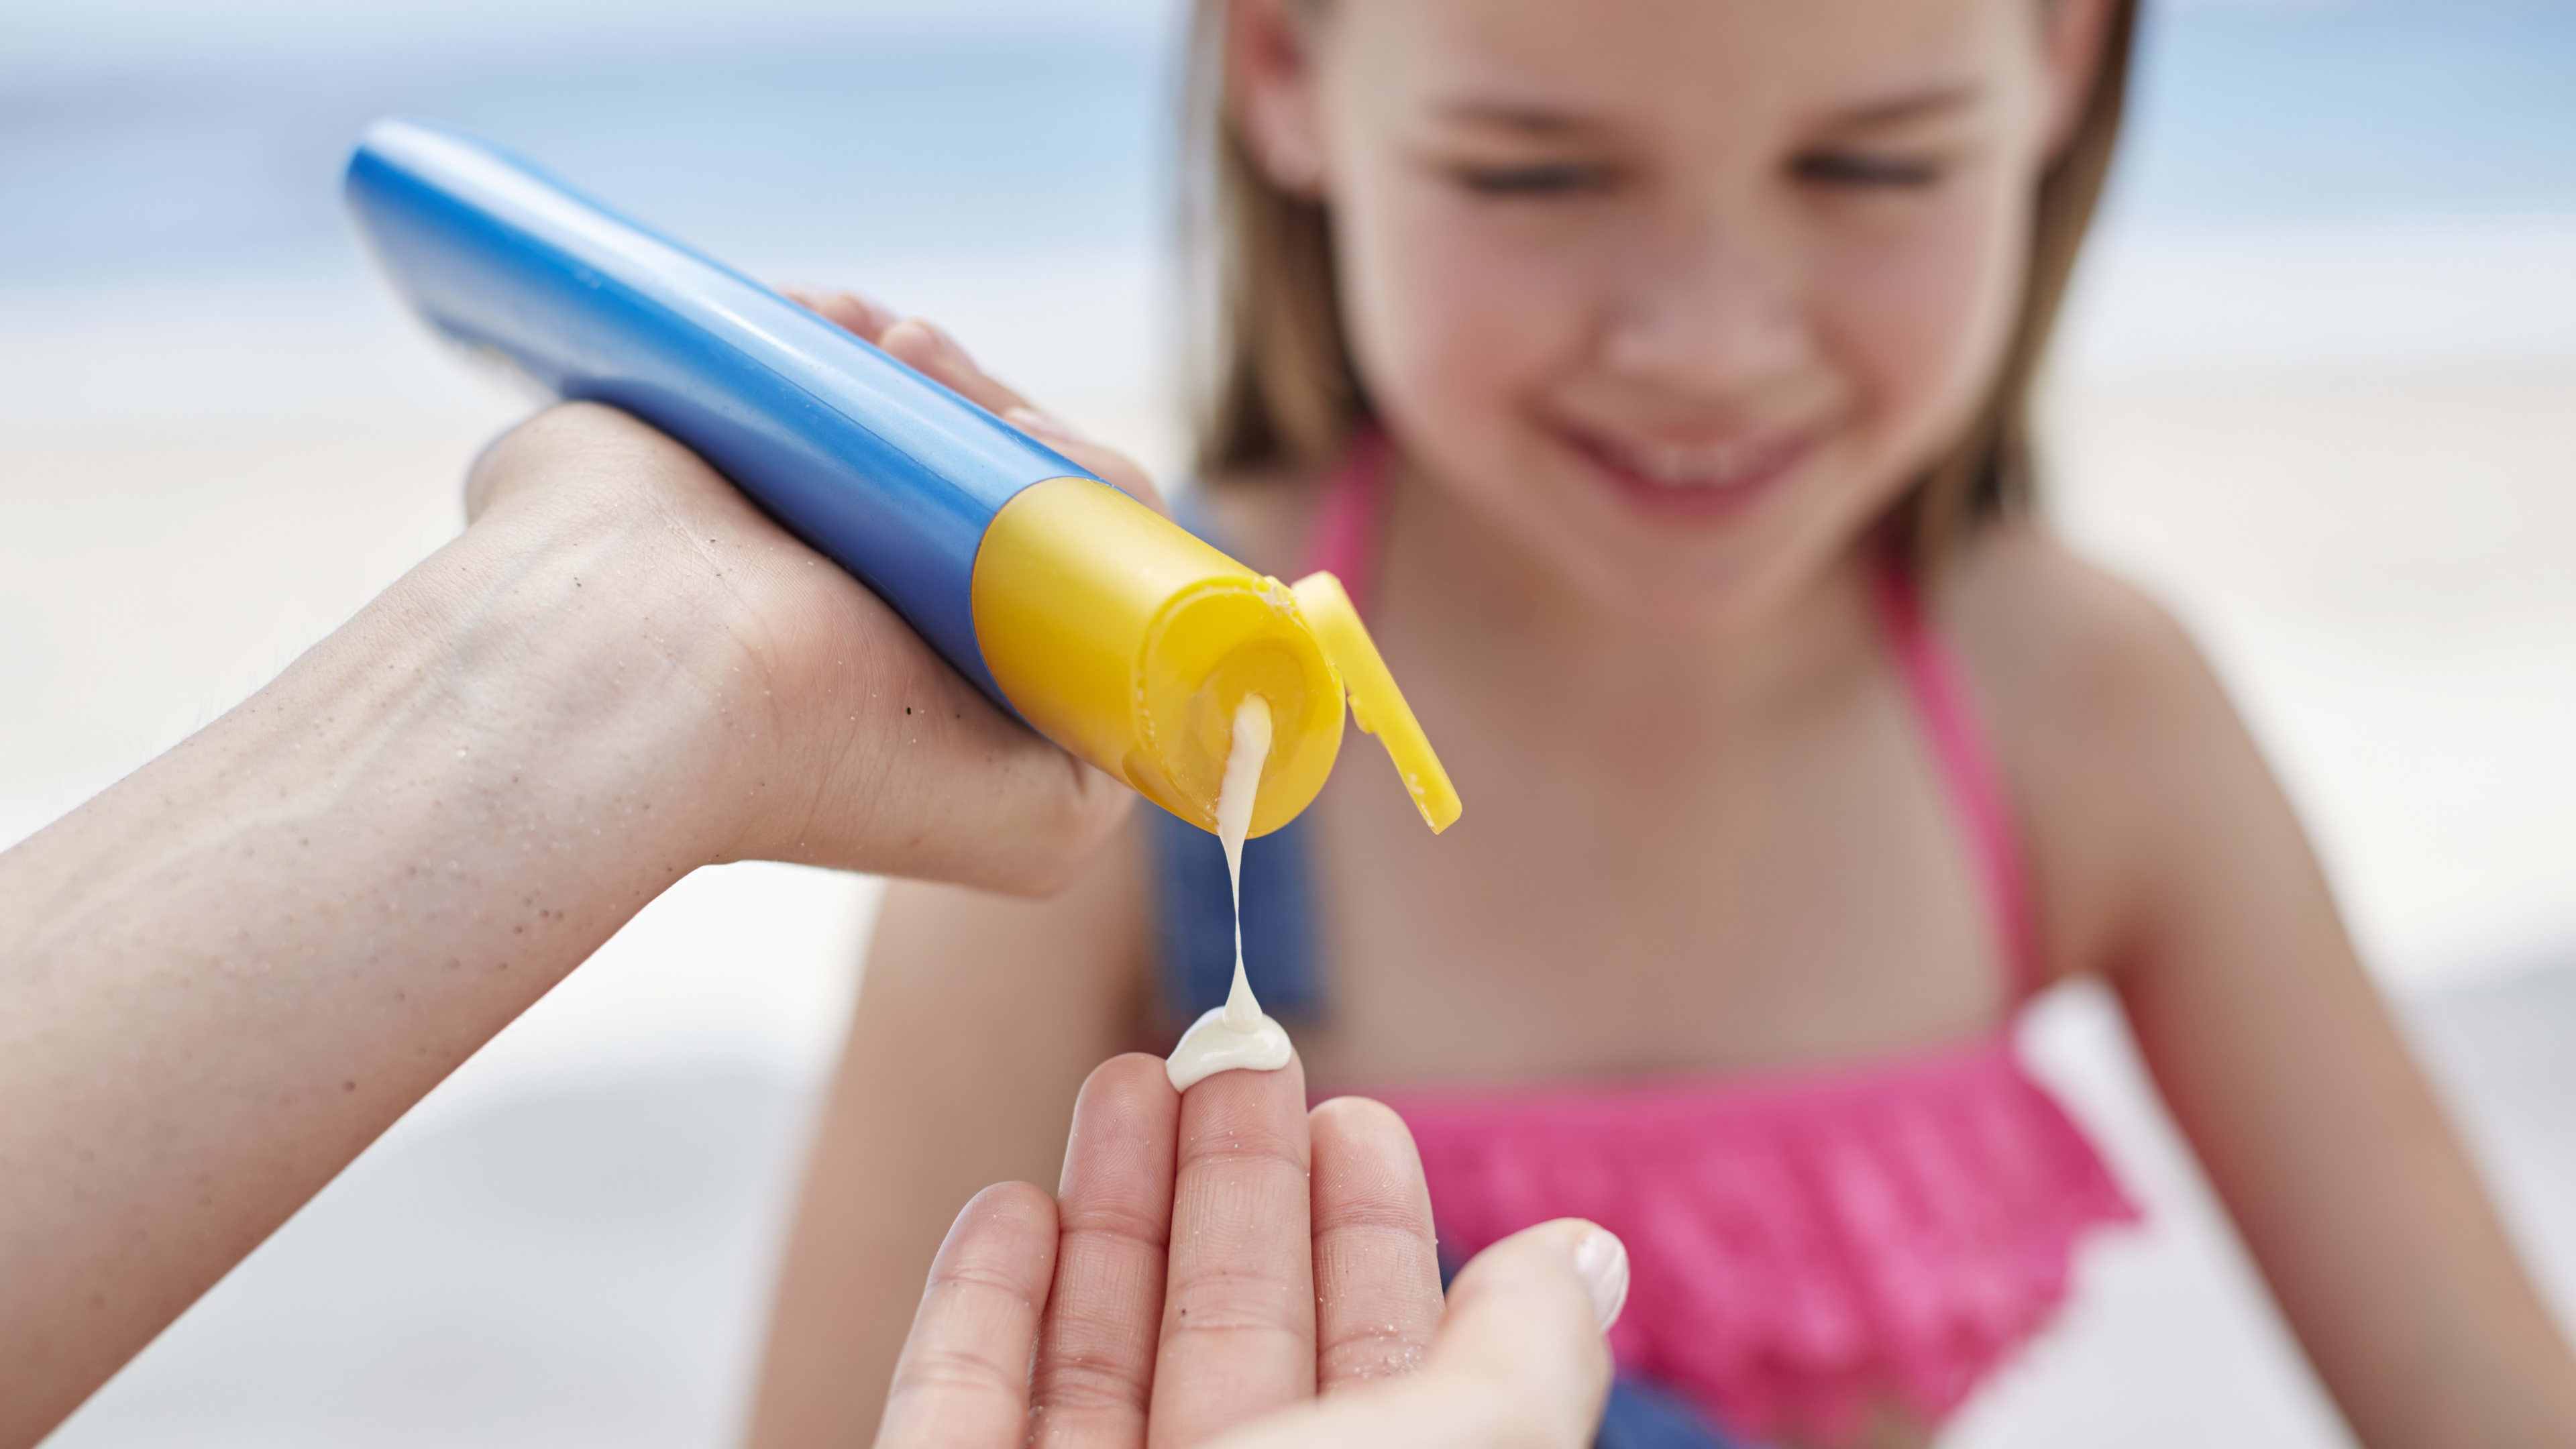 Consumentenbond waarschuwt: deze zonnebrandcrèmes moet je niet gebruiken